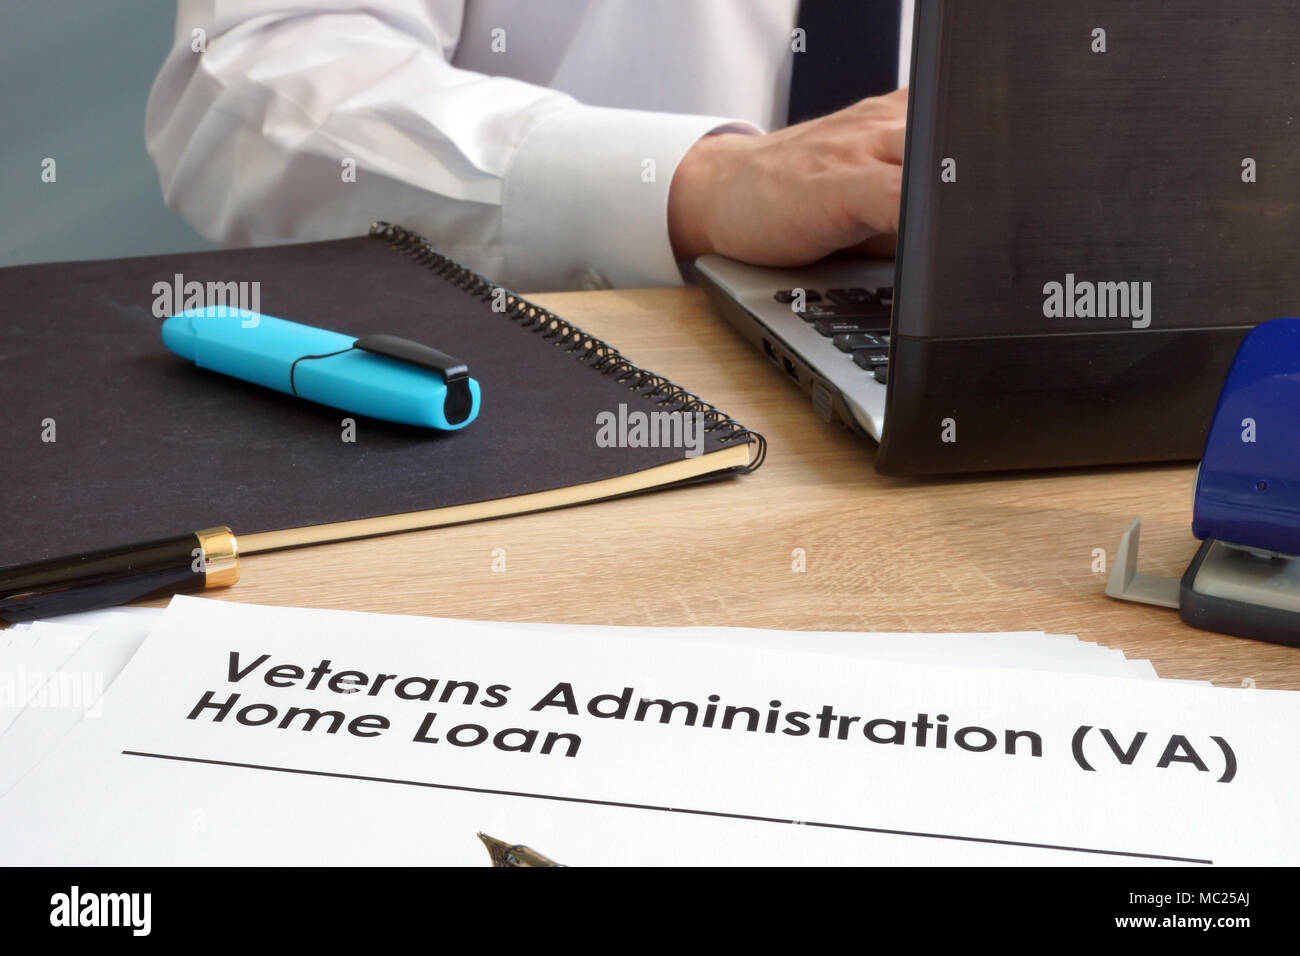 Veterans Administration (VA) Home Loan application form. Stockfoto